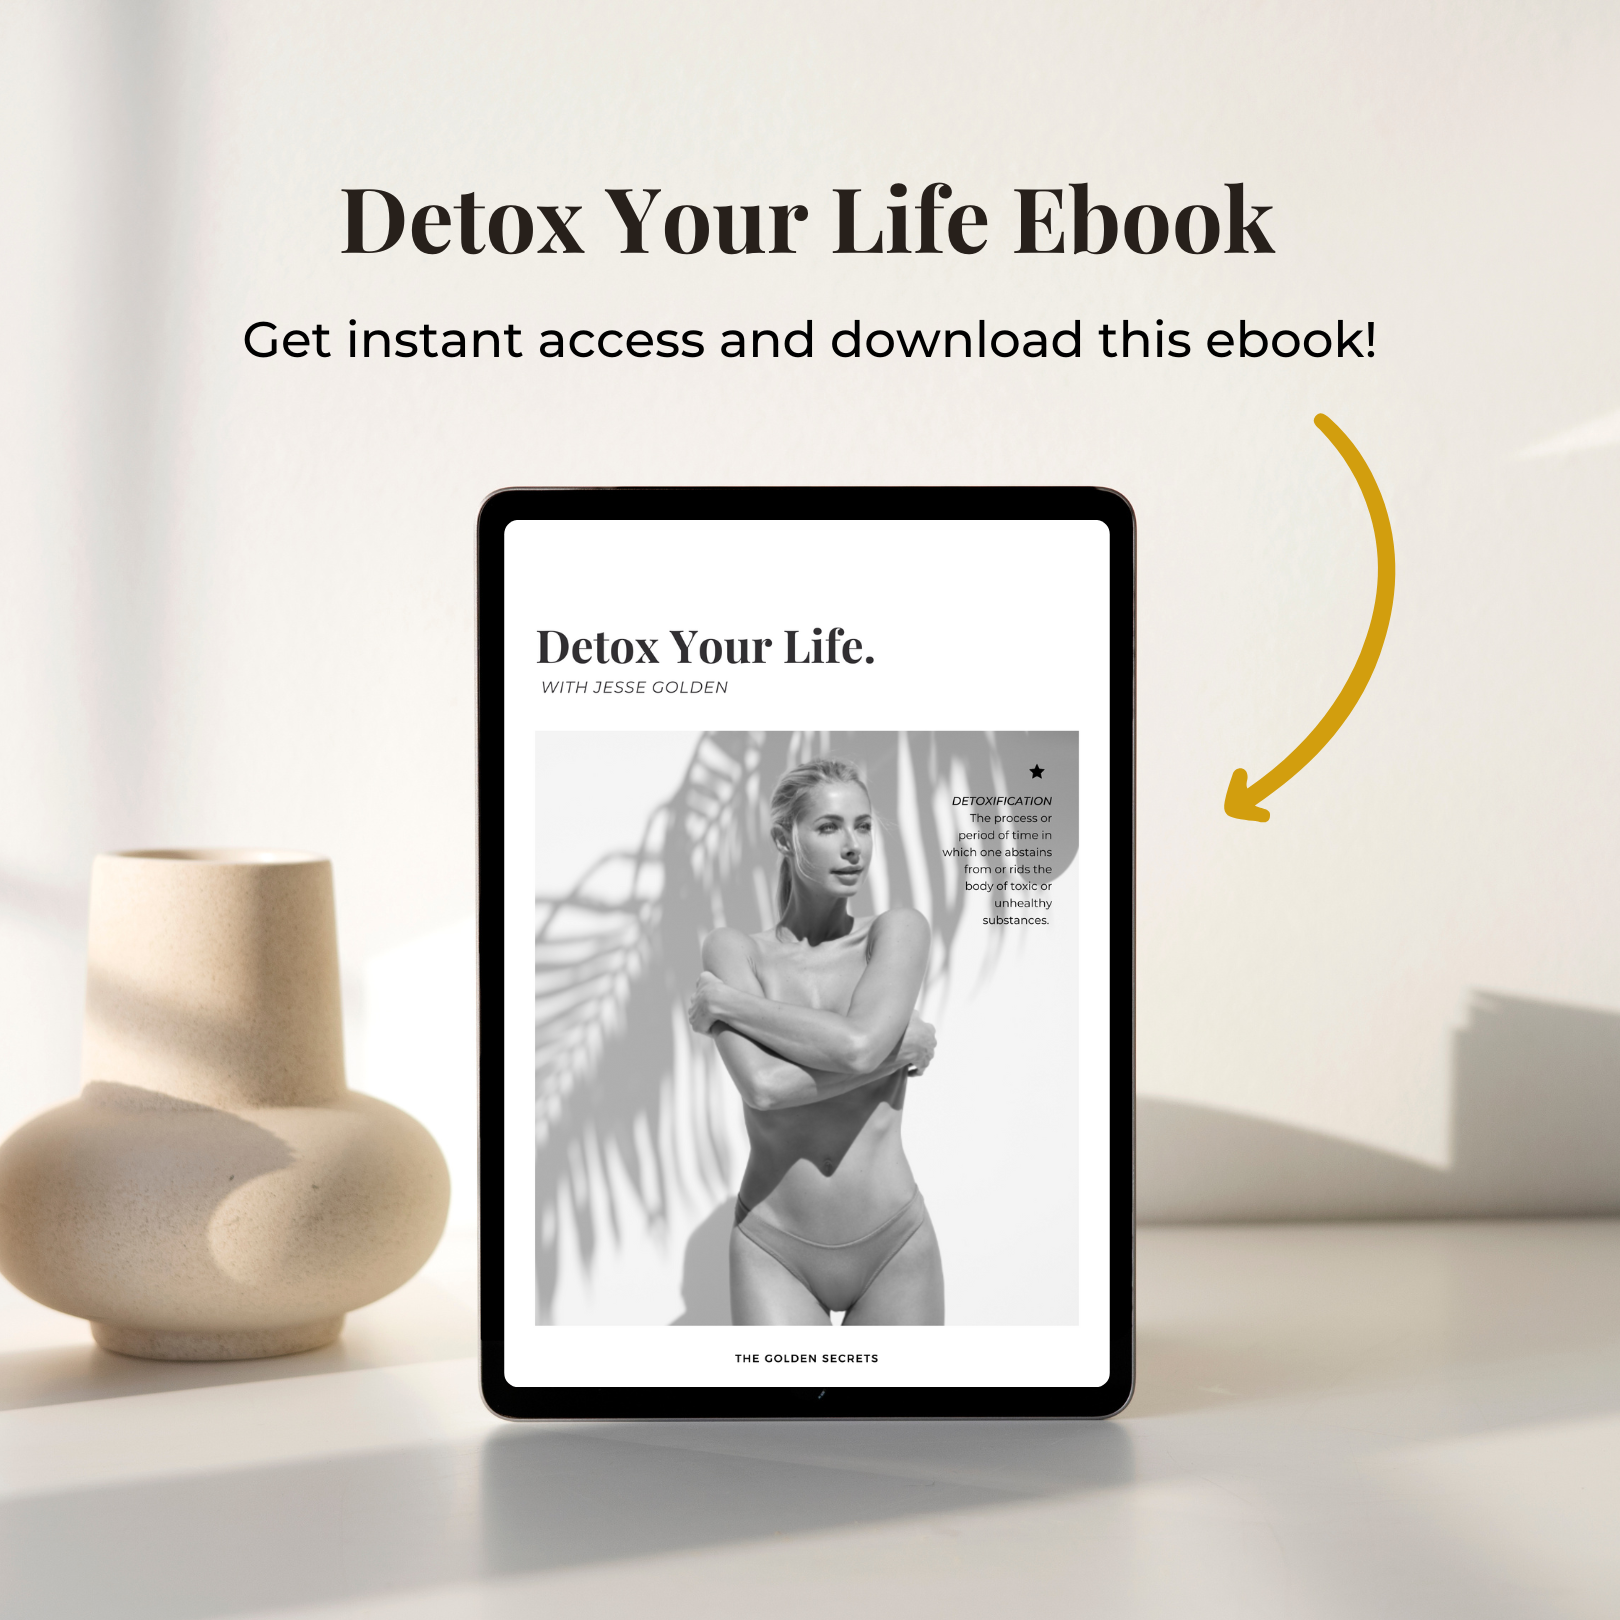 Detox Your Life Ebook